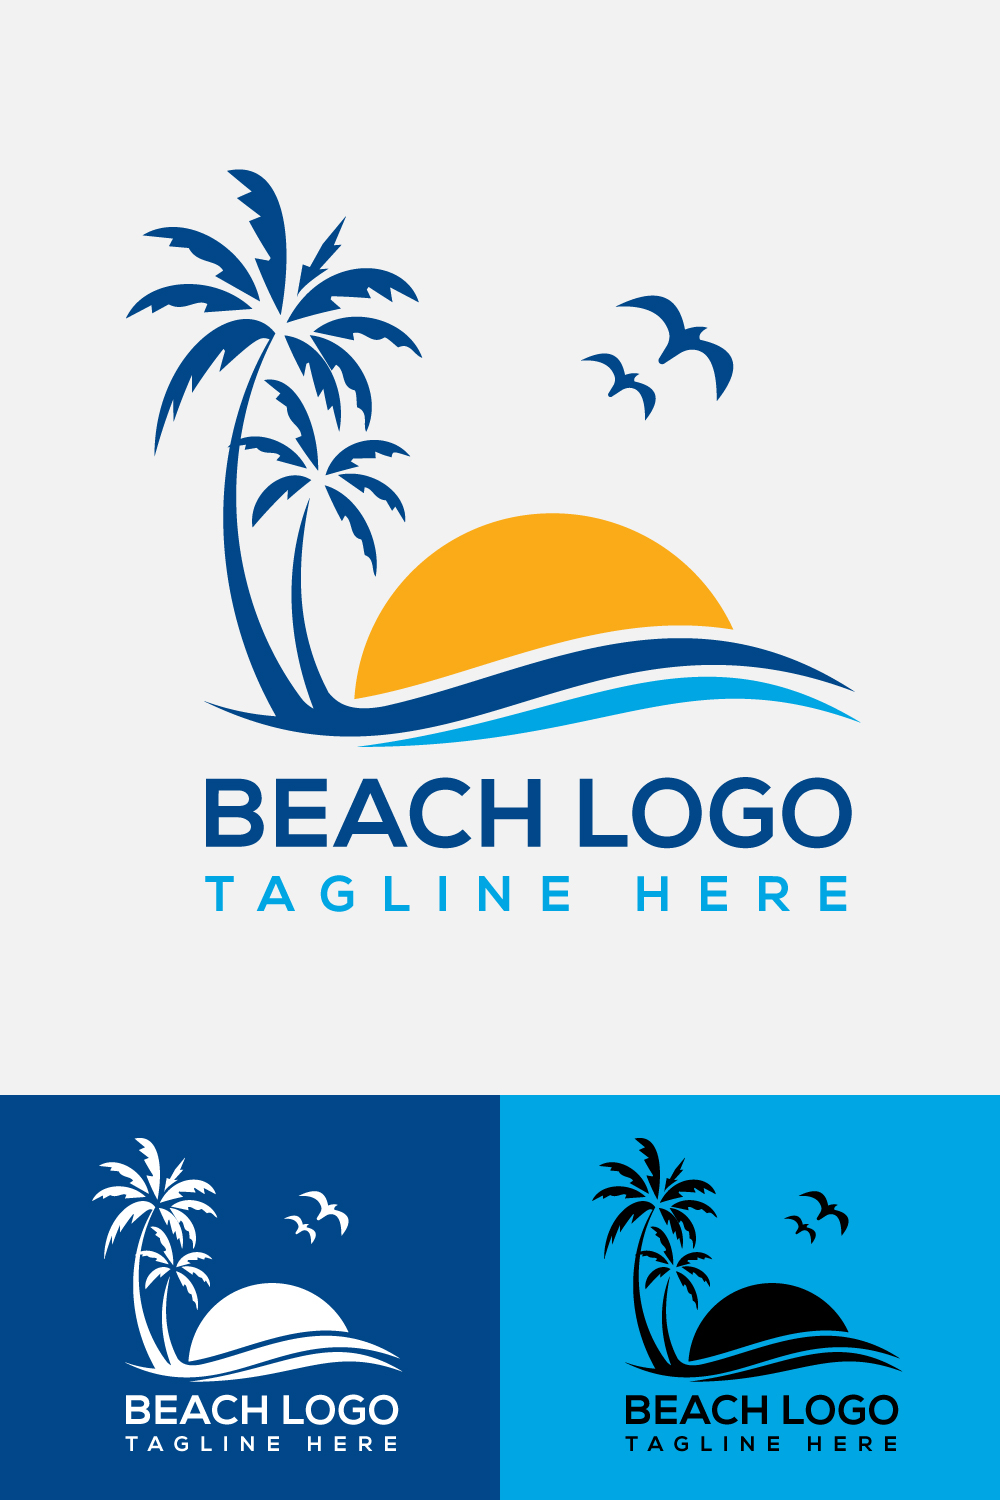 Modern Beach Logo Vector Illustration pinterest image.